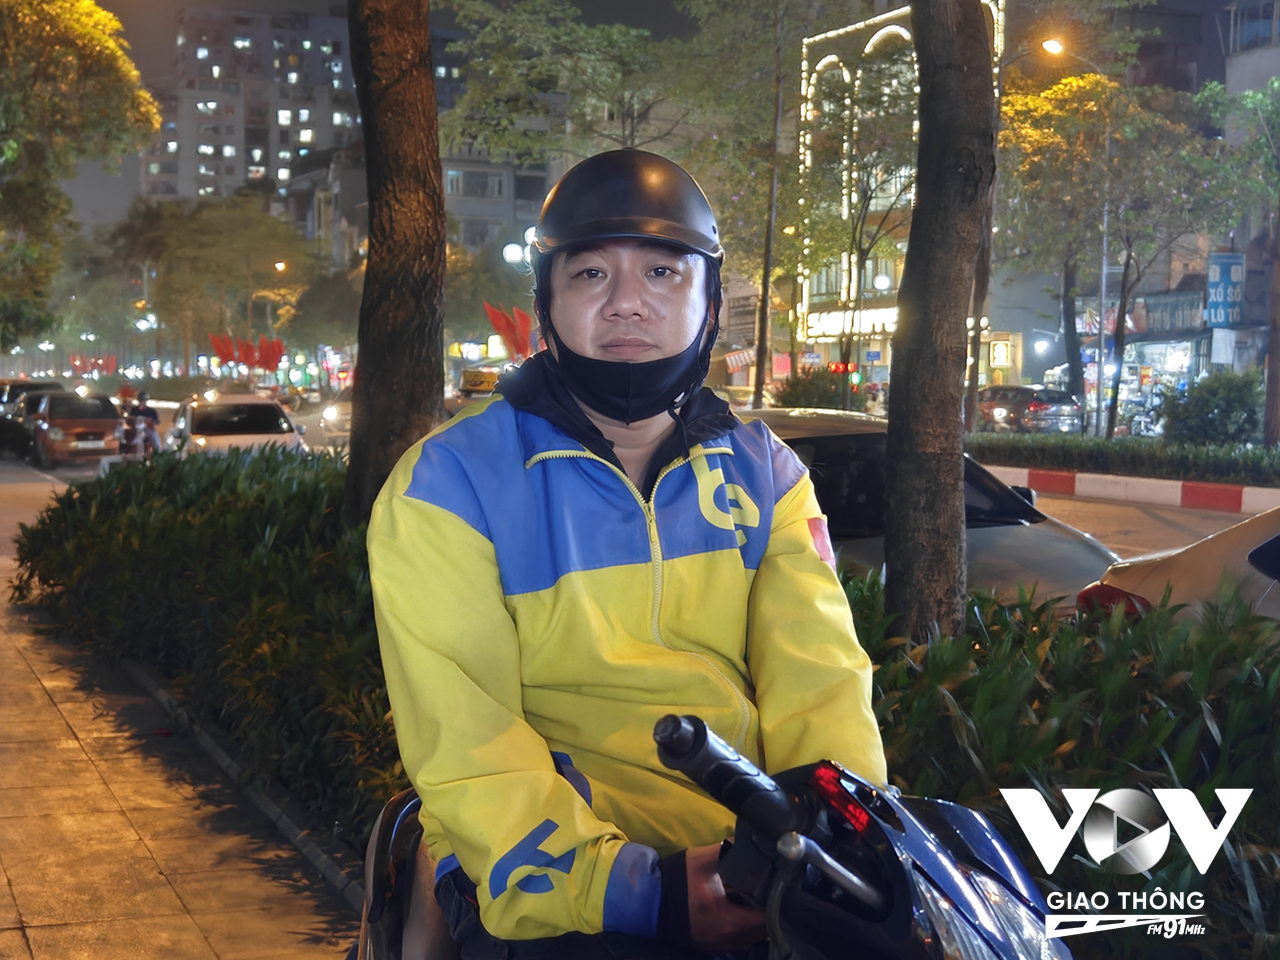 Anh Nguyễn Thành Dương, tài xế hãng Be cho rằng, có sự nhập nhèm, thậm chí 'ăn chặn' khi các hãng xe tính điểm thưởng. 3 năm nay, anh phải tự đóng BHXH tự nguyện để duy trì an sinh. (1)